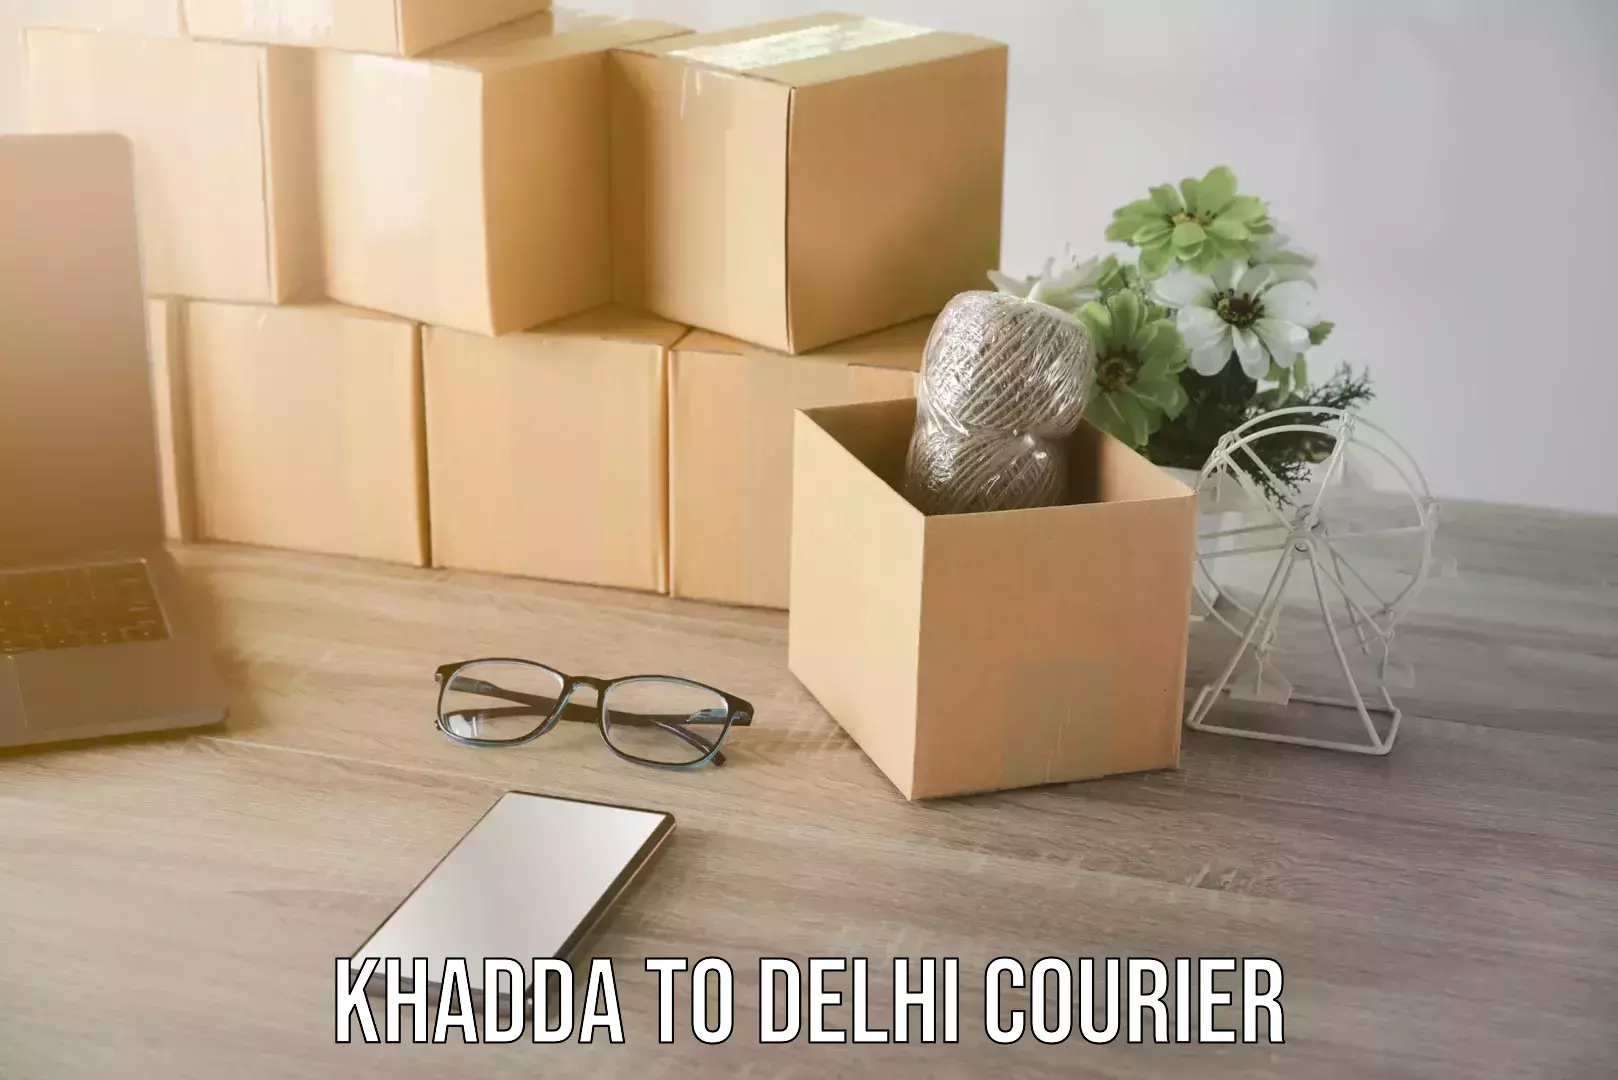 Trusted moving company Khadda to Delhi